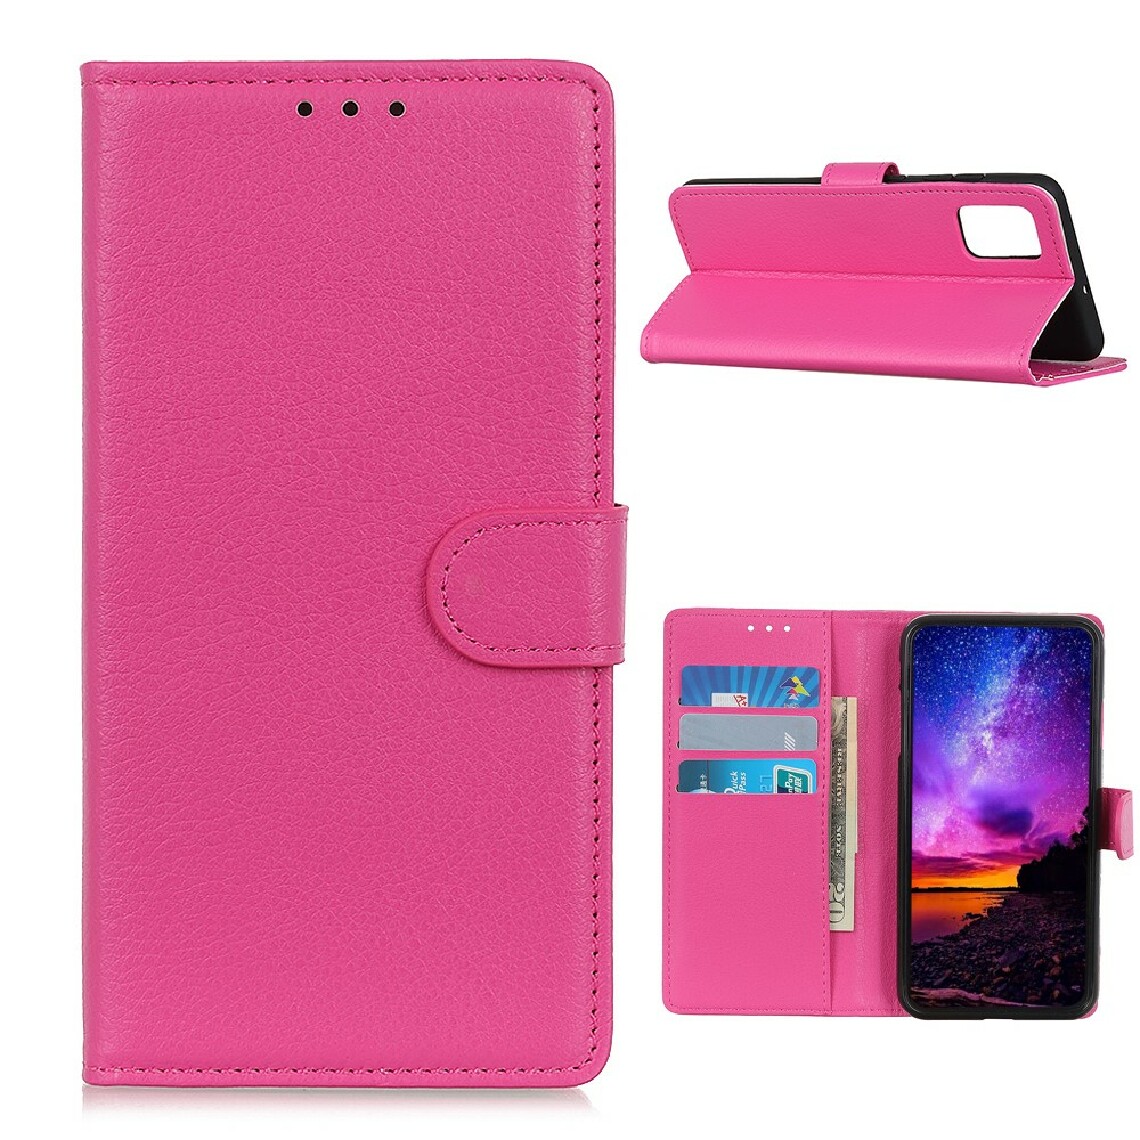 Other - Etui en PU texture de litchi de style classique rose pour votre Huawei Honor 10X Lite - Coque, étui smartphone